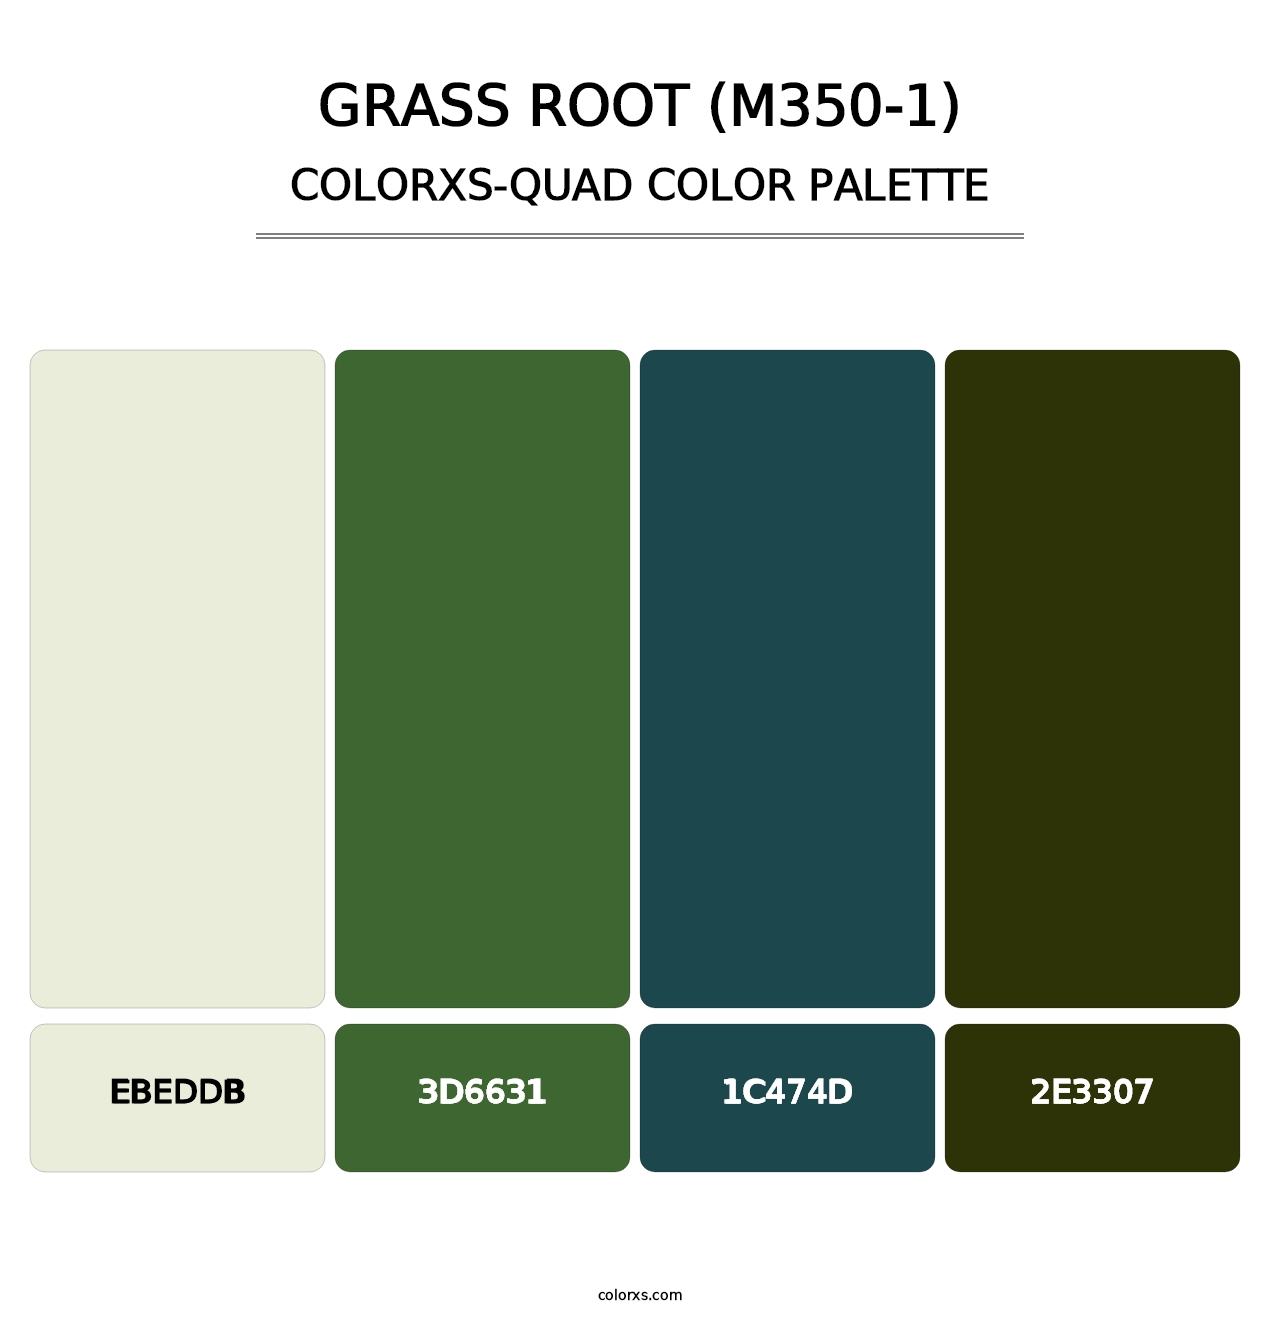 Grass Root (M350-1) - Colorxs Quad Palette